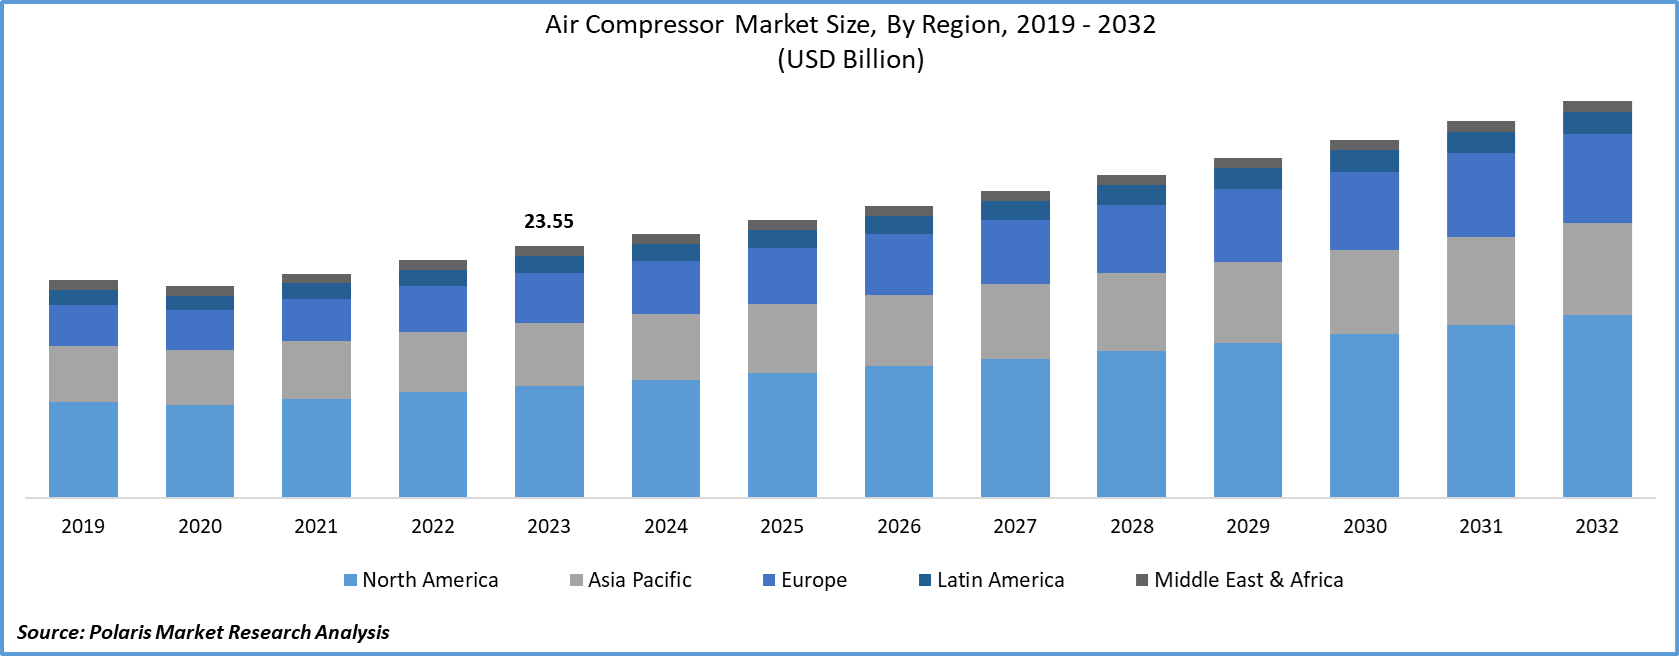 Air Compressor Market Size